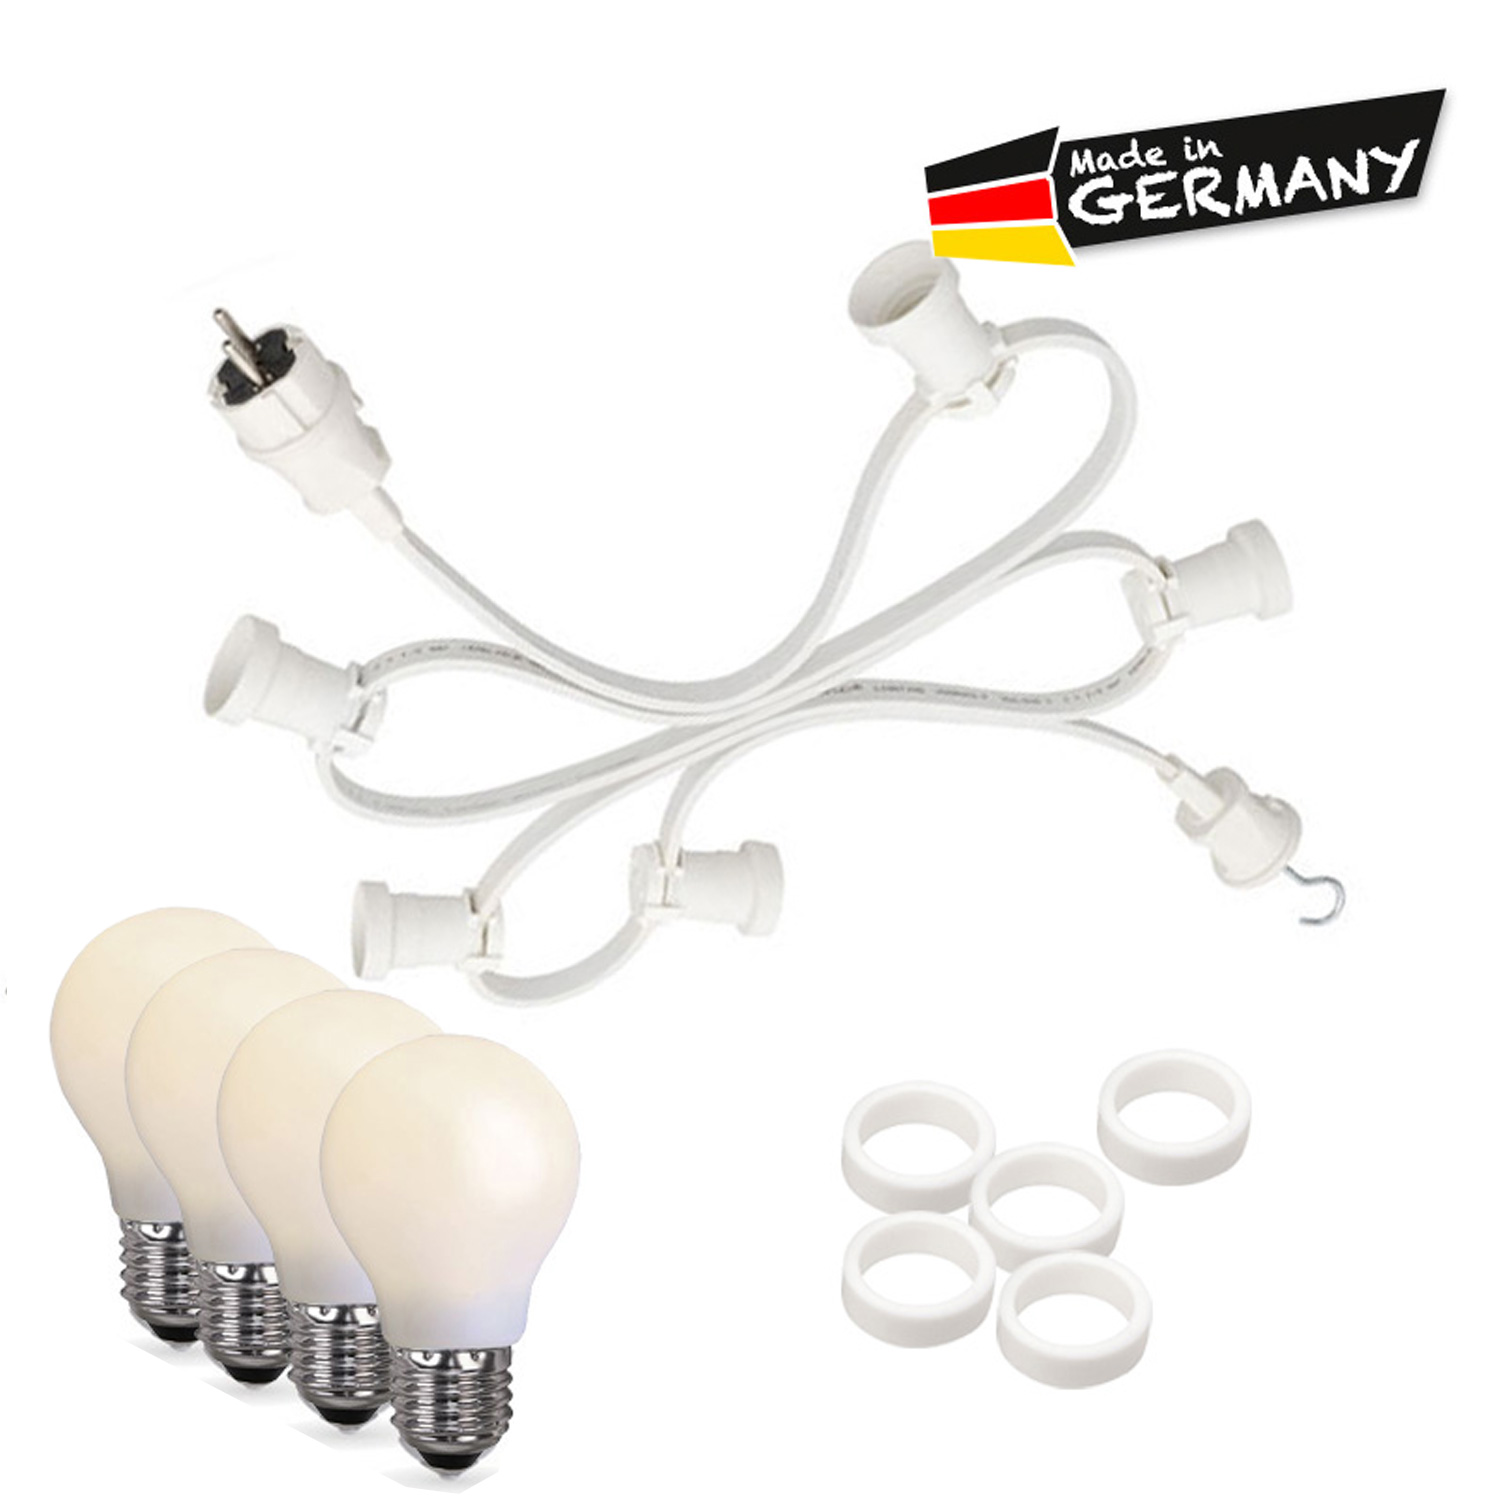 Illu-/Partylichterkette 30m - Außen - Made in Germany - 30 bruchfeste opale LED Tropfenlampen